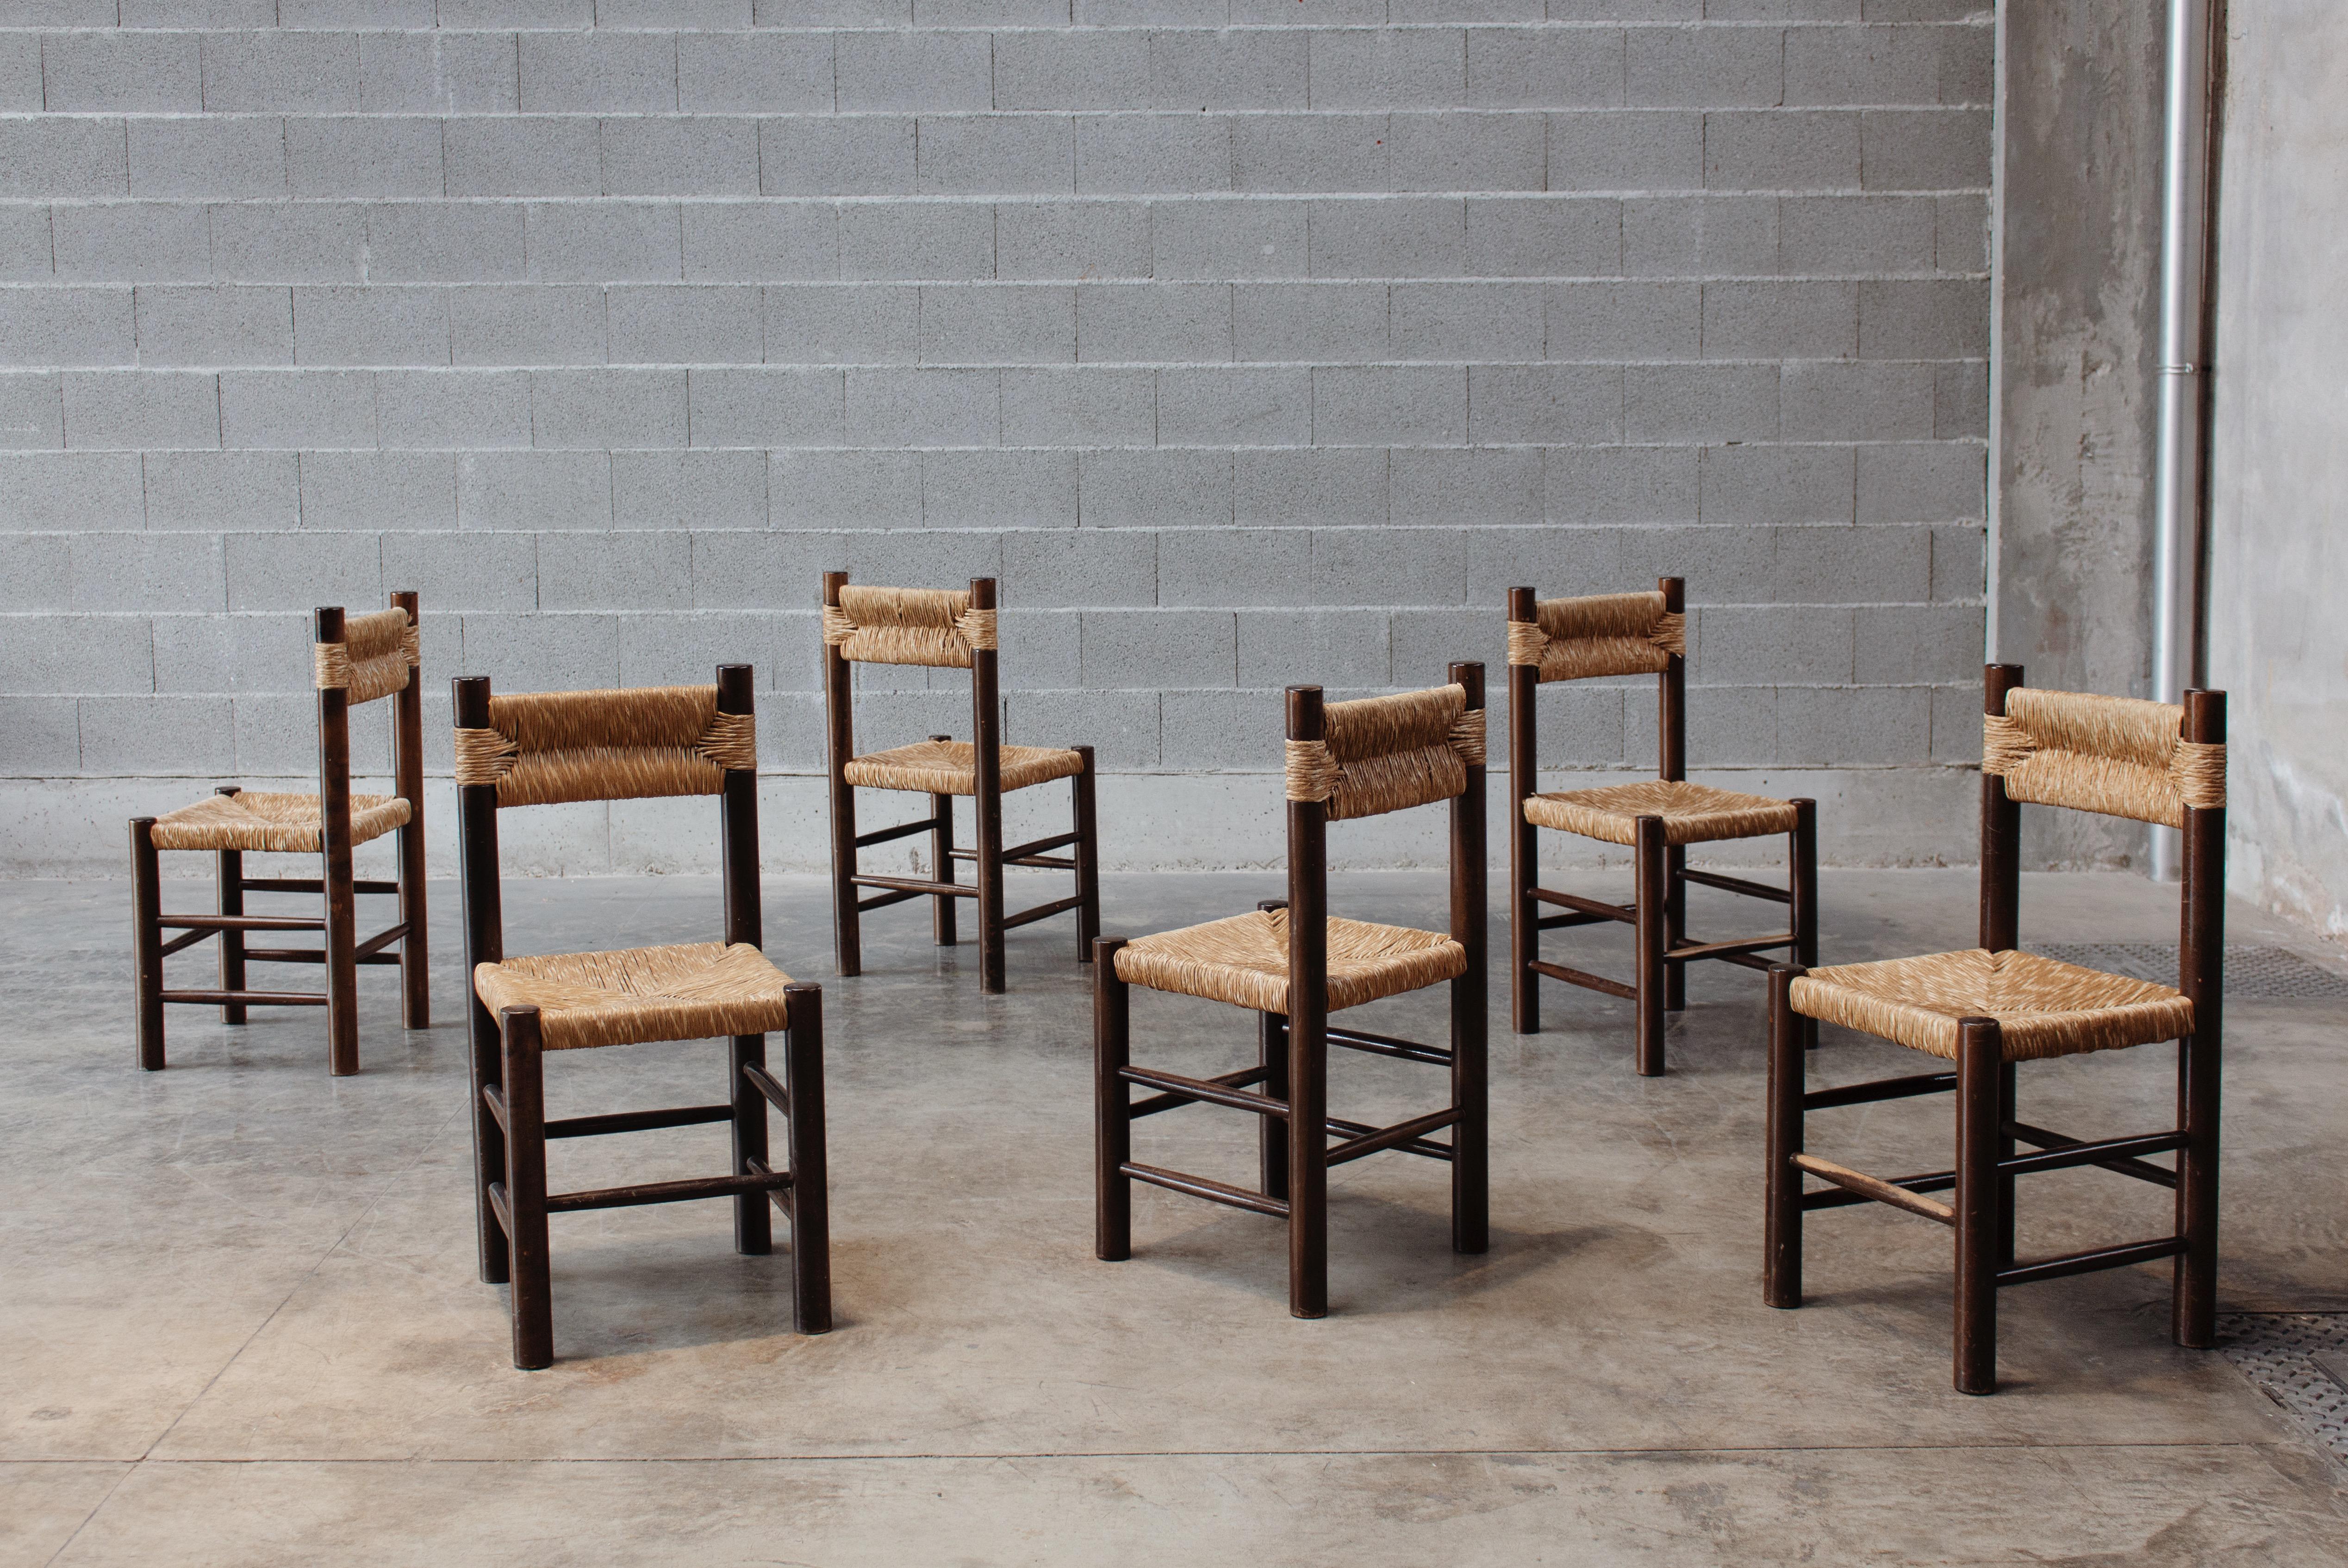 Chaises de salle à manger Charlotte Perriand pour Robert Sentou, paille et bois, France, 1964, ensemble de six.

Les chaises ont un design simple et intemporel. Le dossier et l'assise fantaisie en paille combinés à la structure en bois de pin